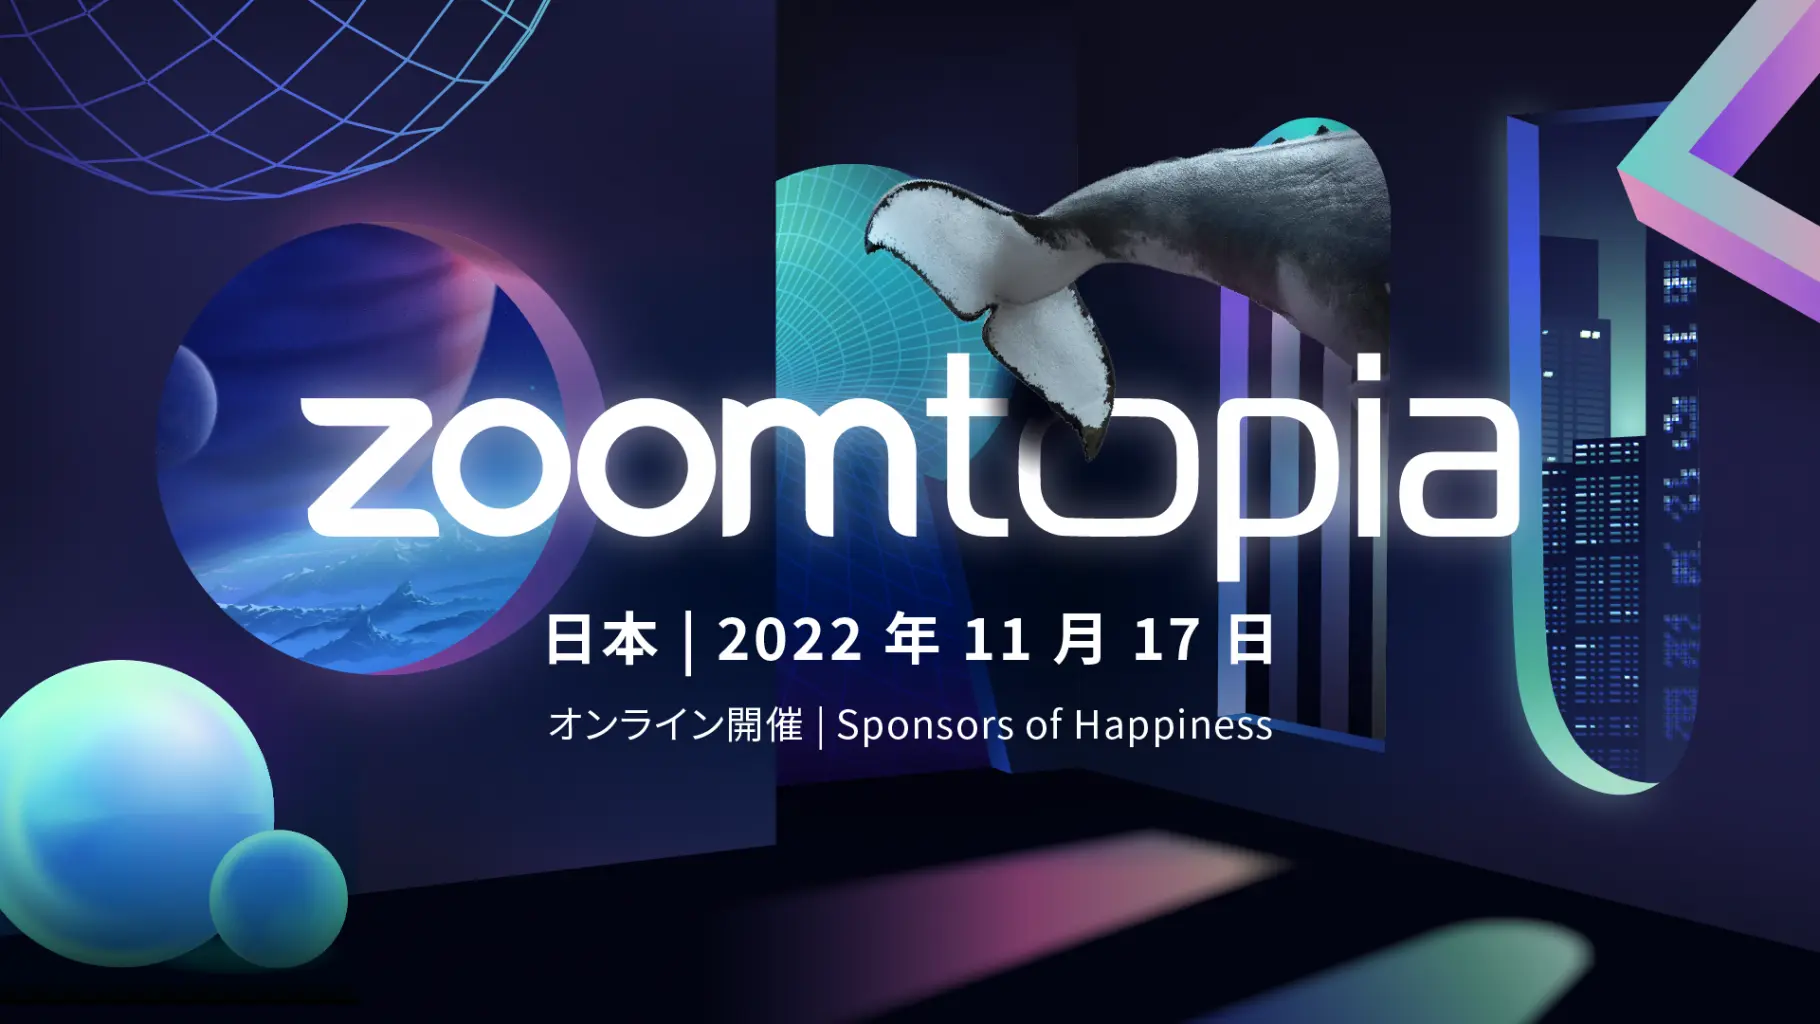 Zoomtopia Japan 2022